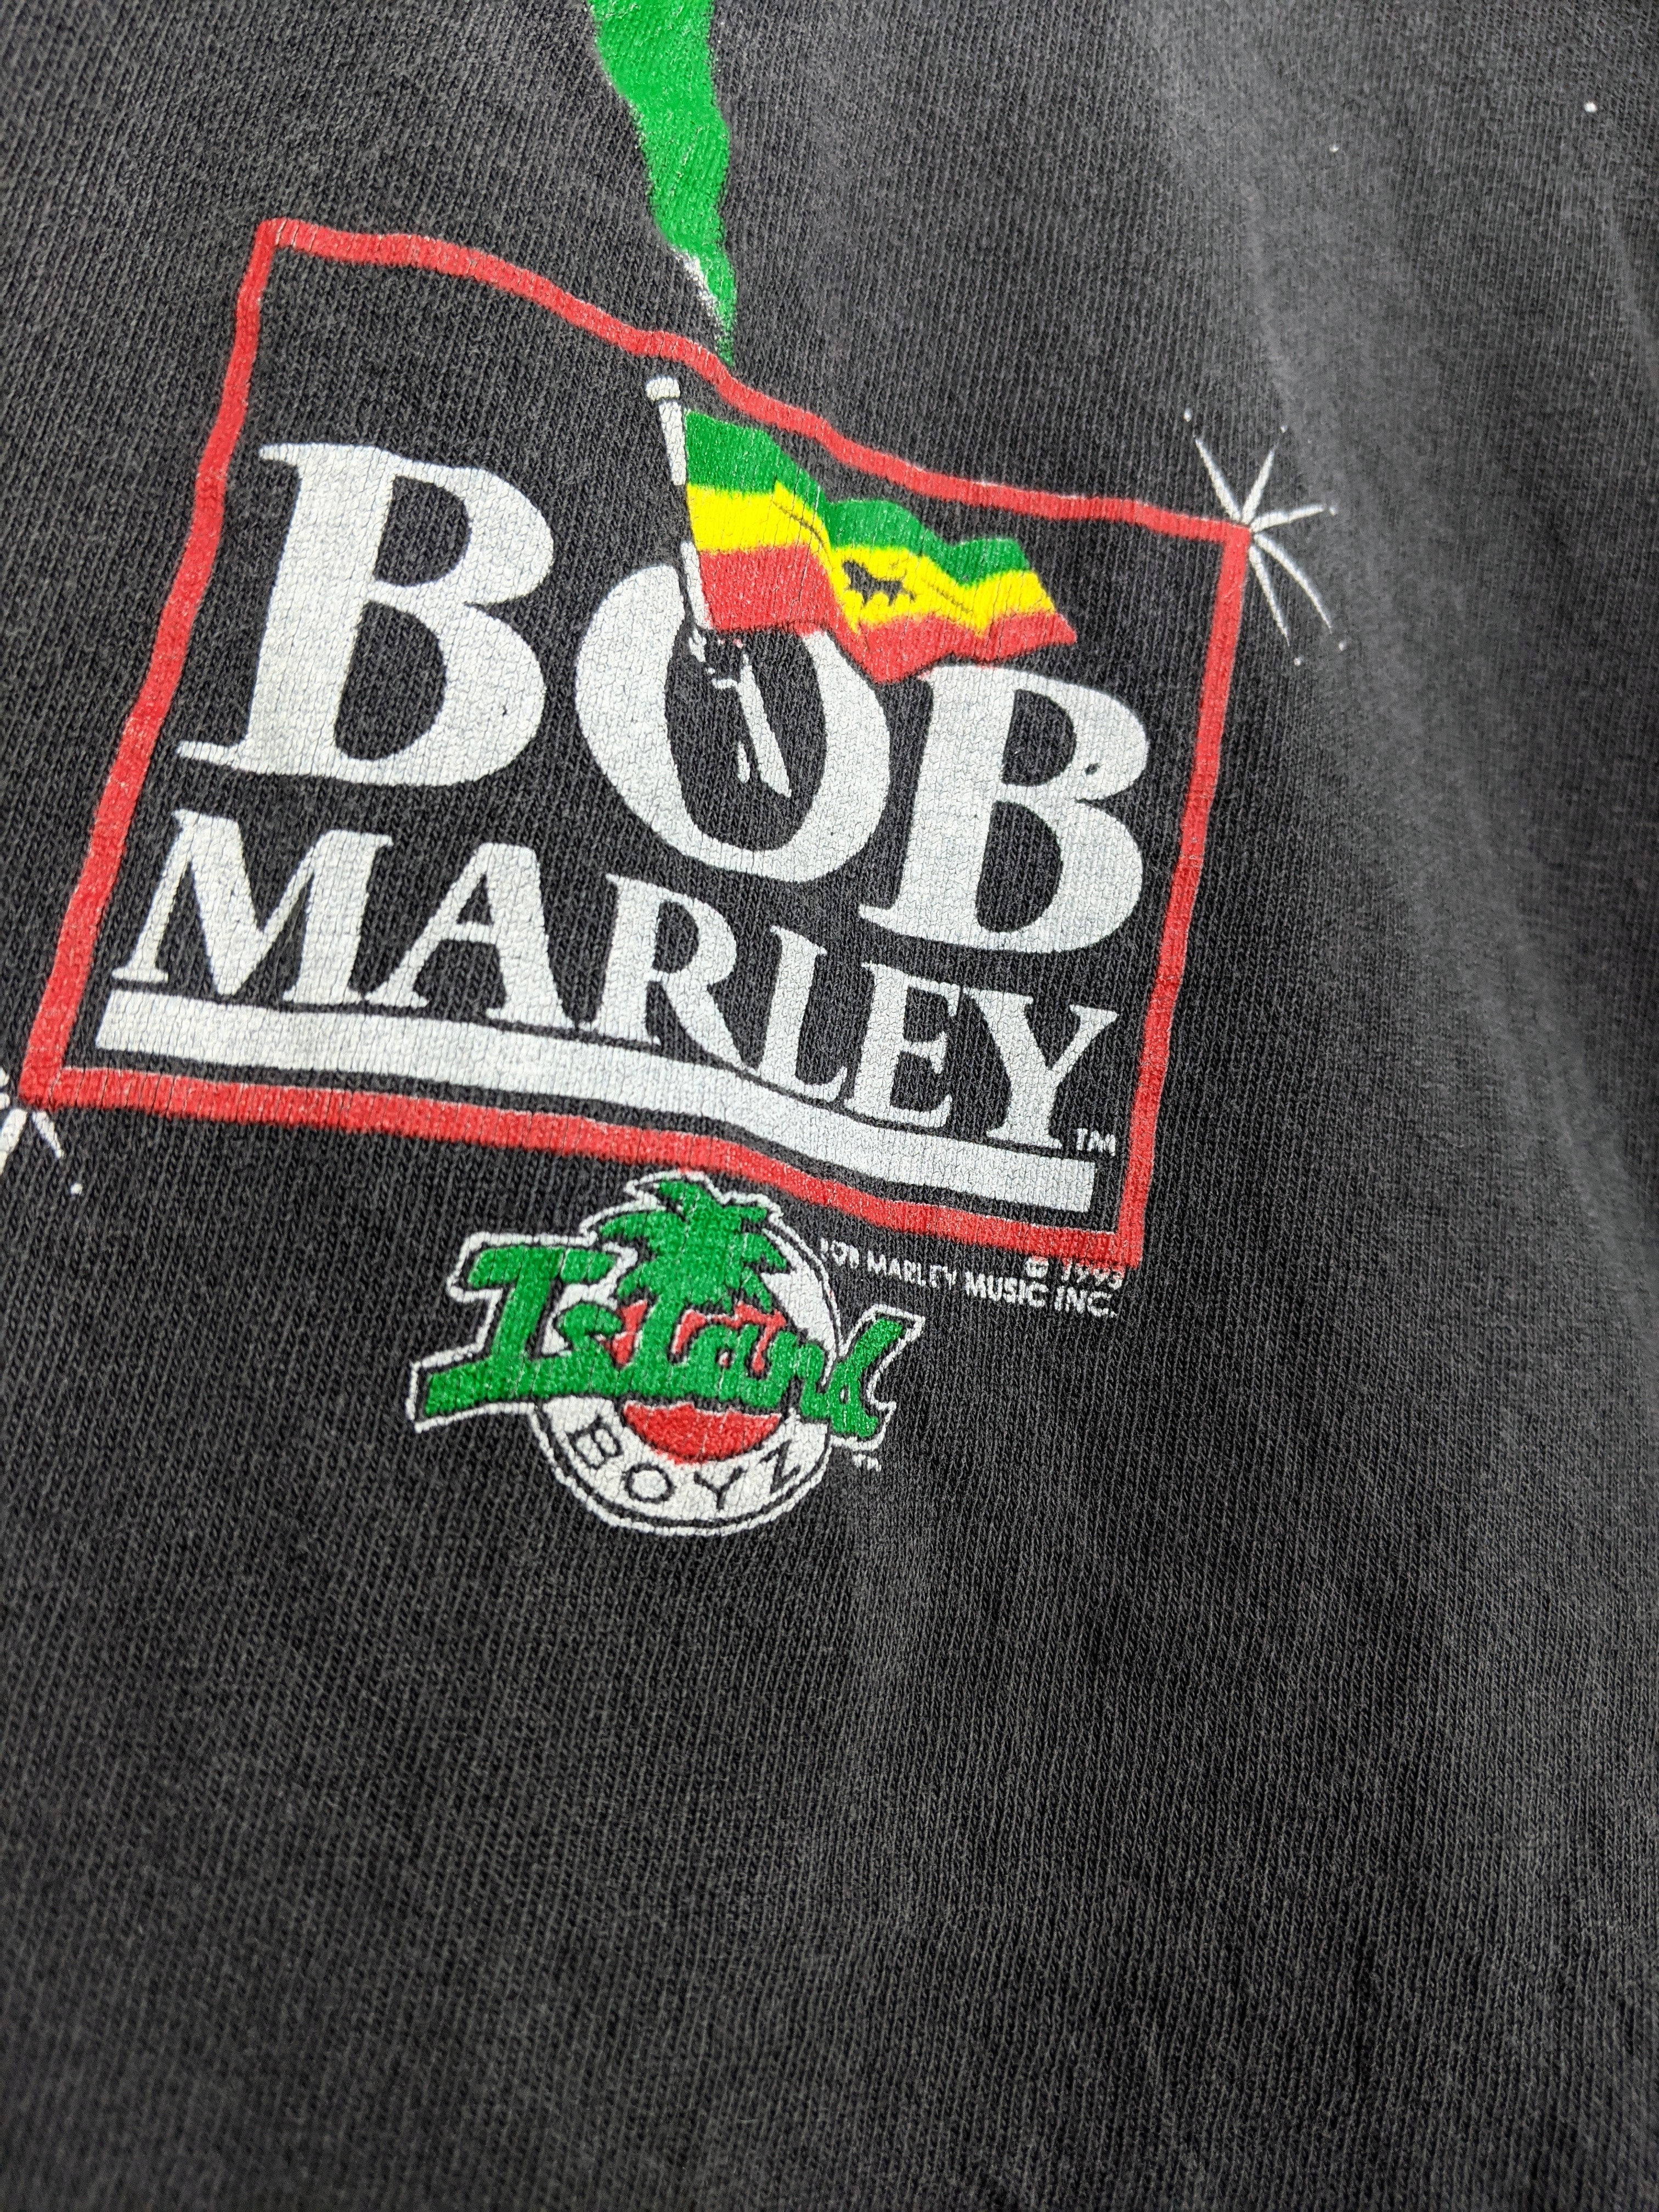 Bob Marley War Lyrics Tee (L)